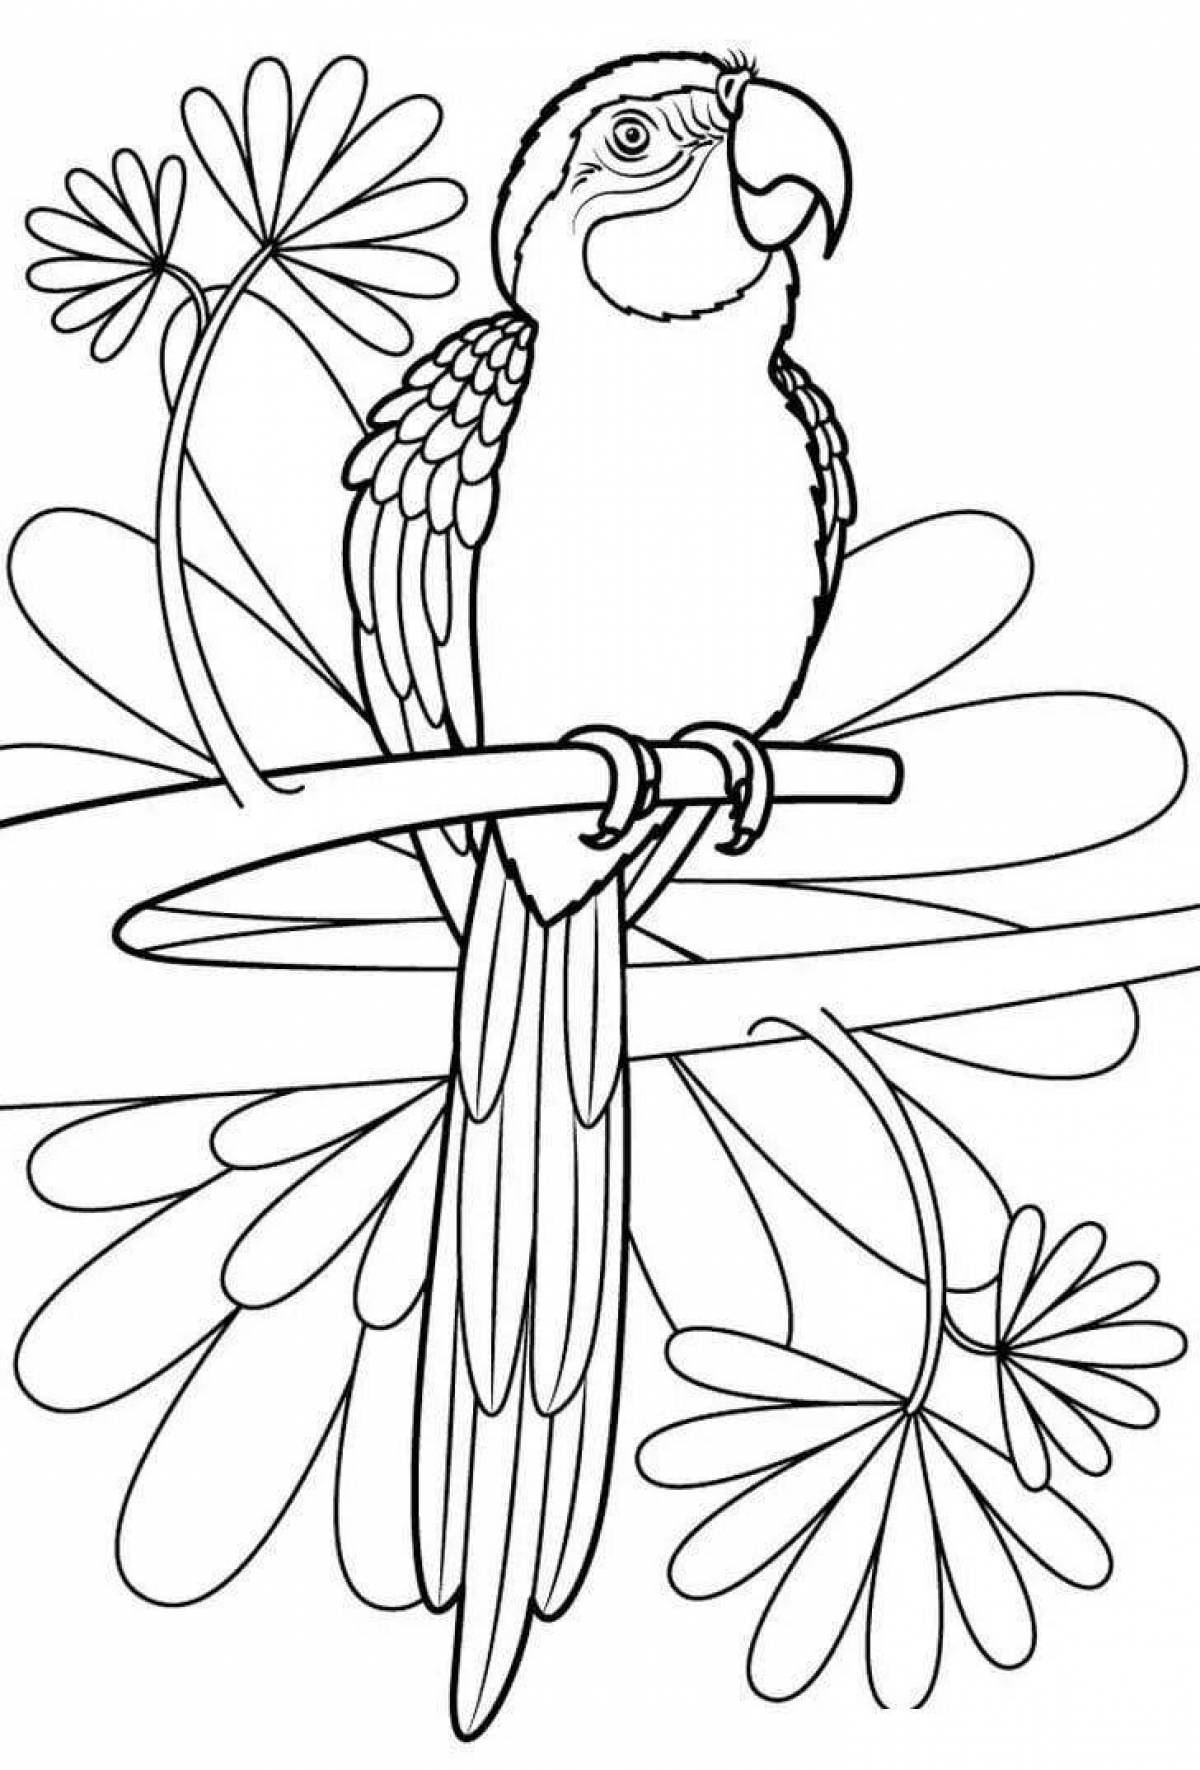 Раскраска попугай